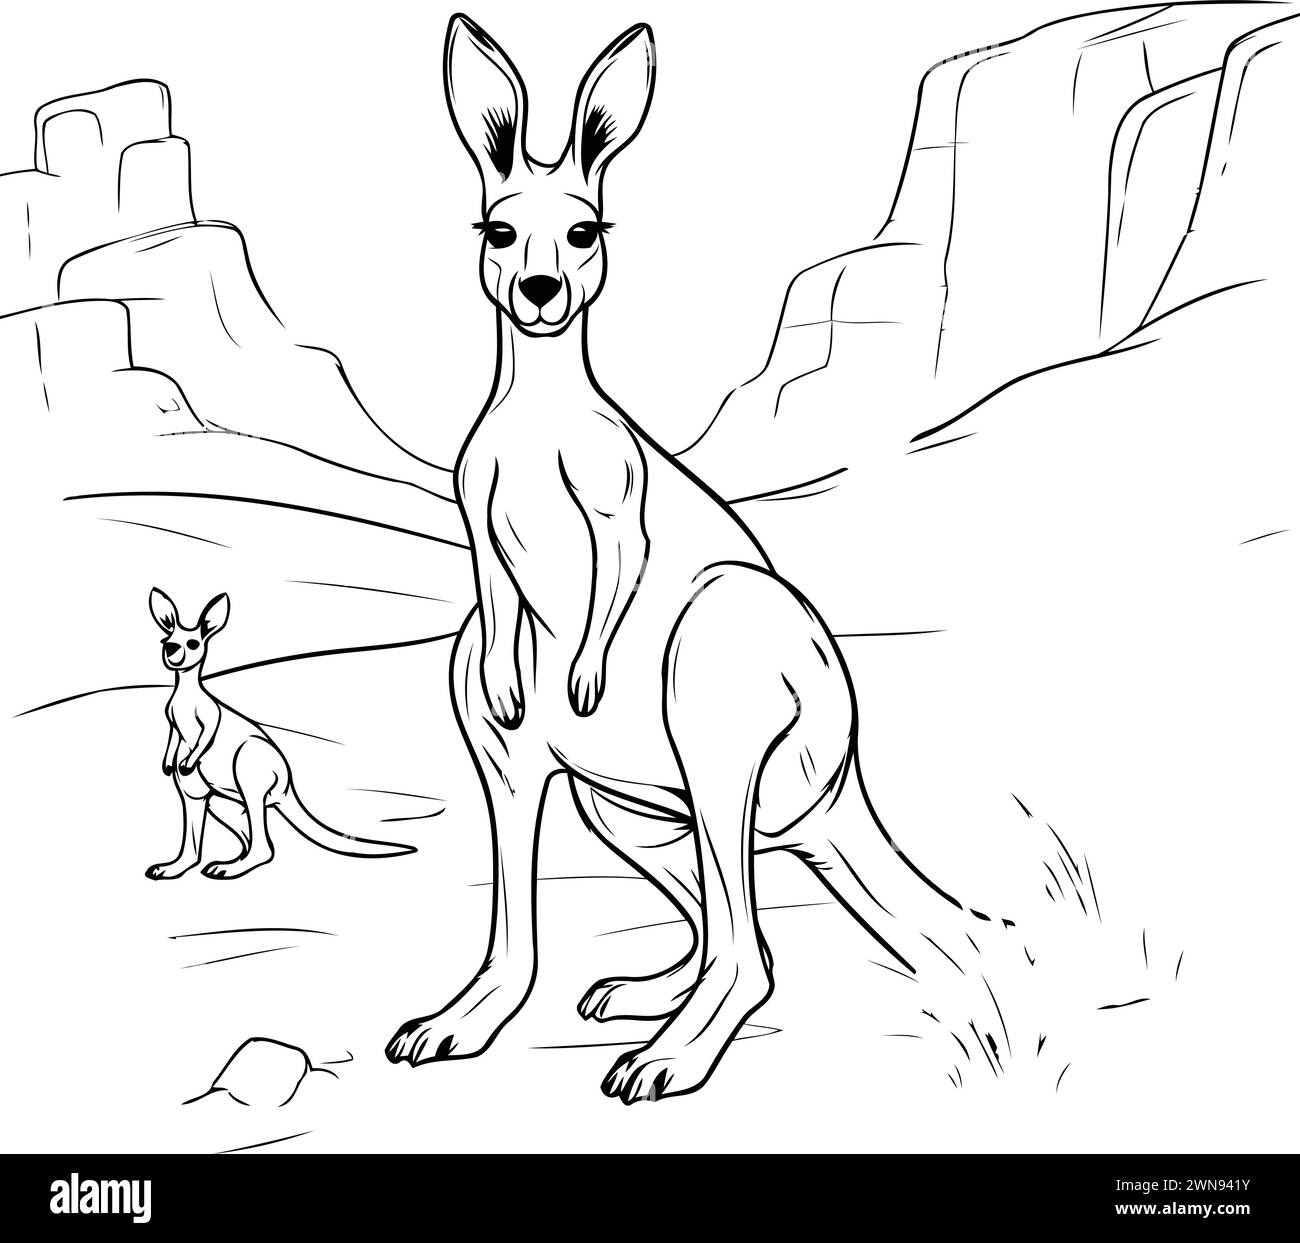 Kangaroo and baby kangaroo. sketch for your design Stock Vector